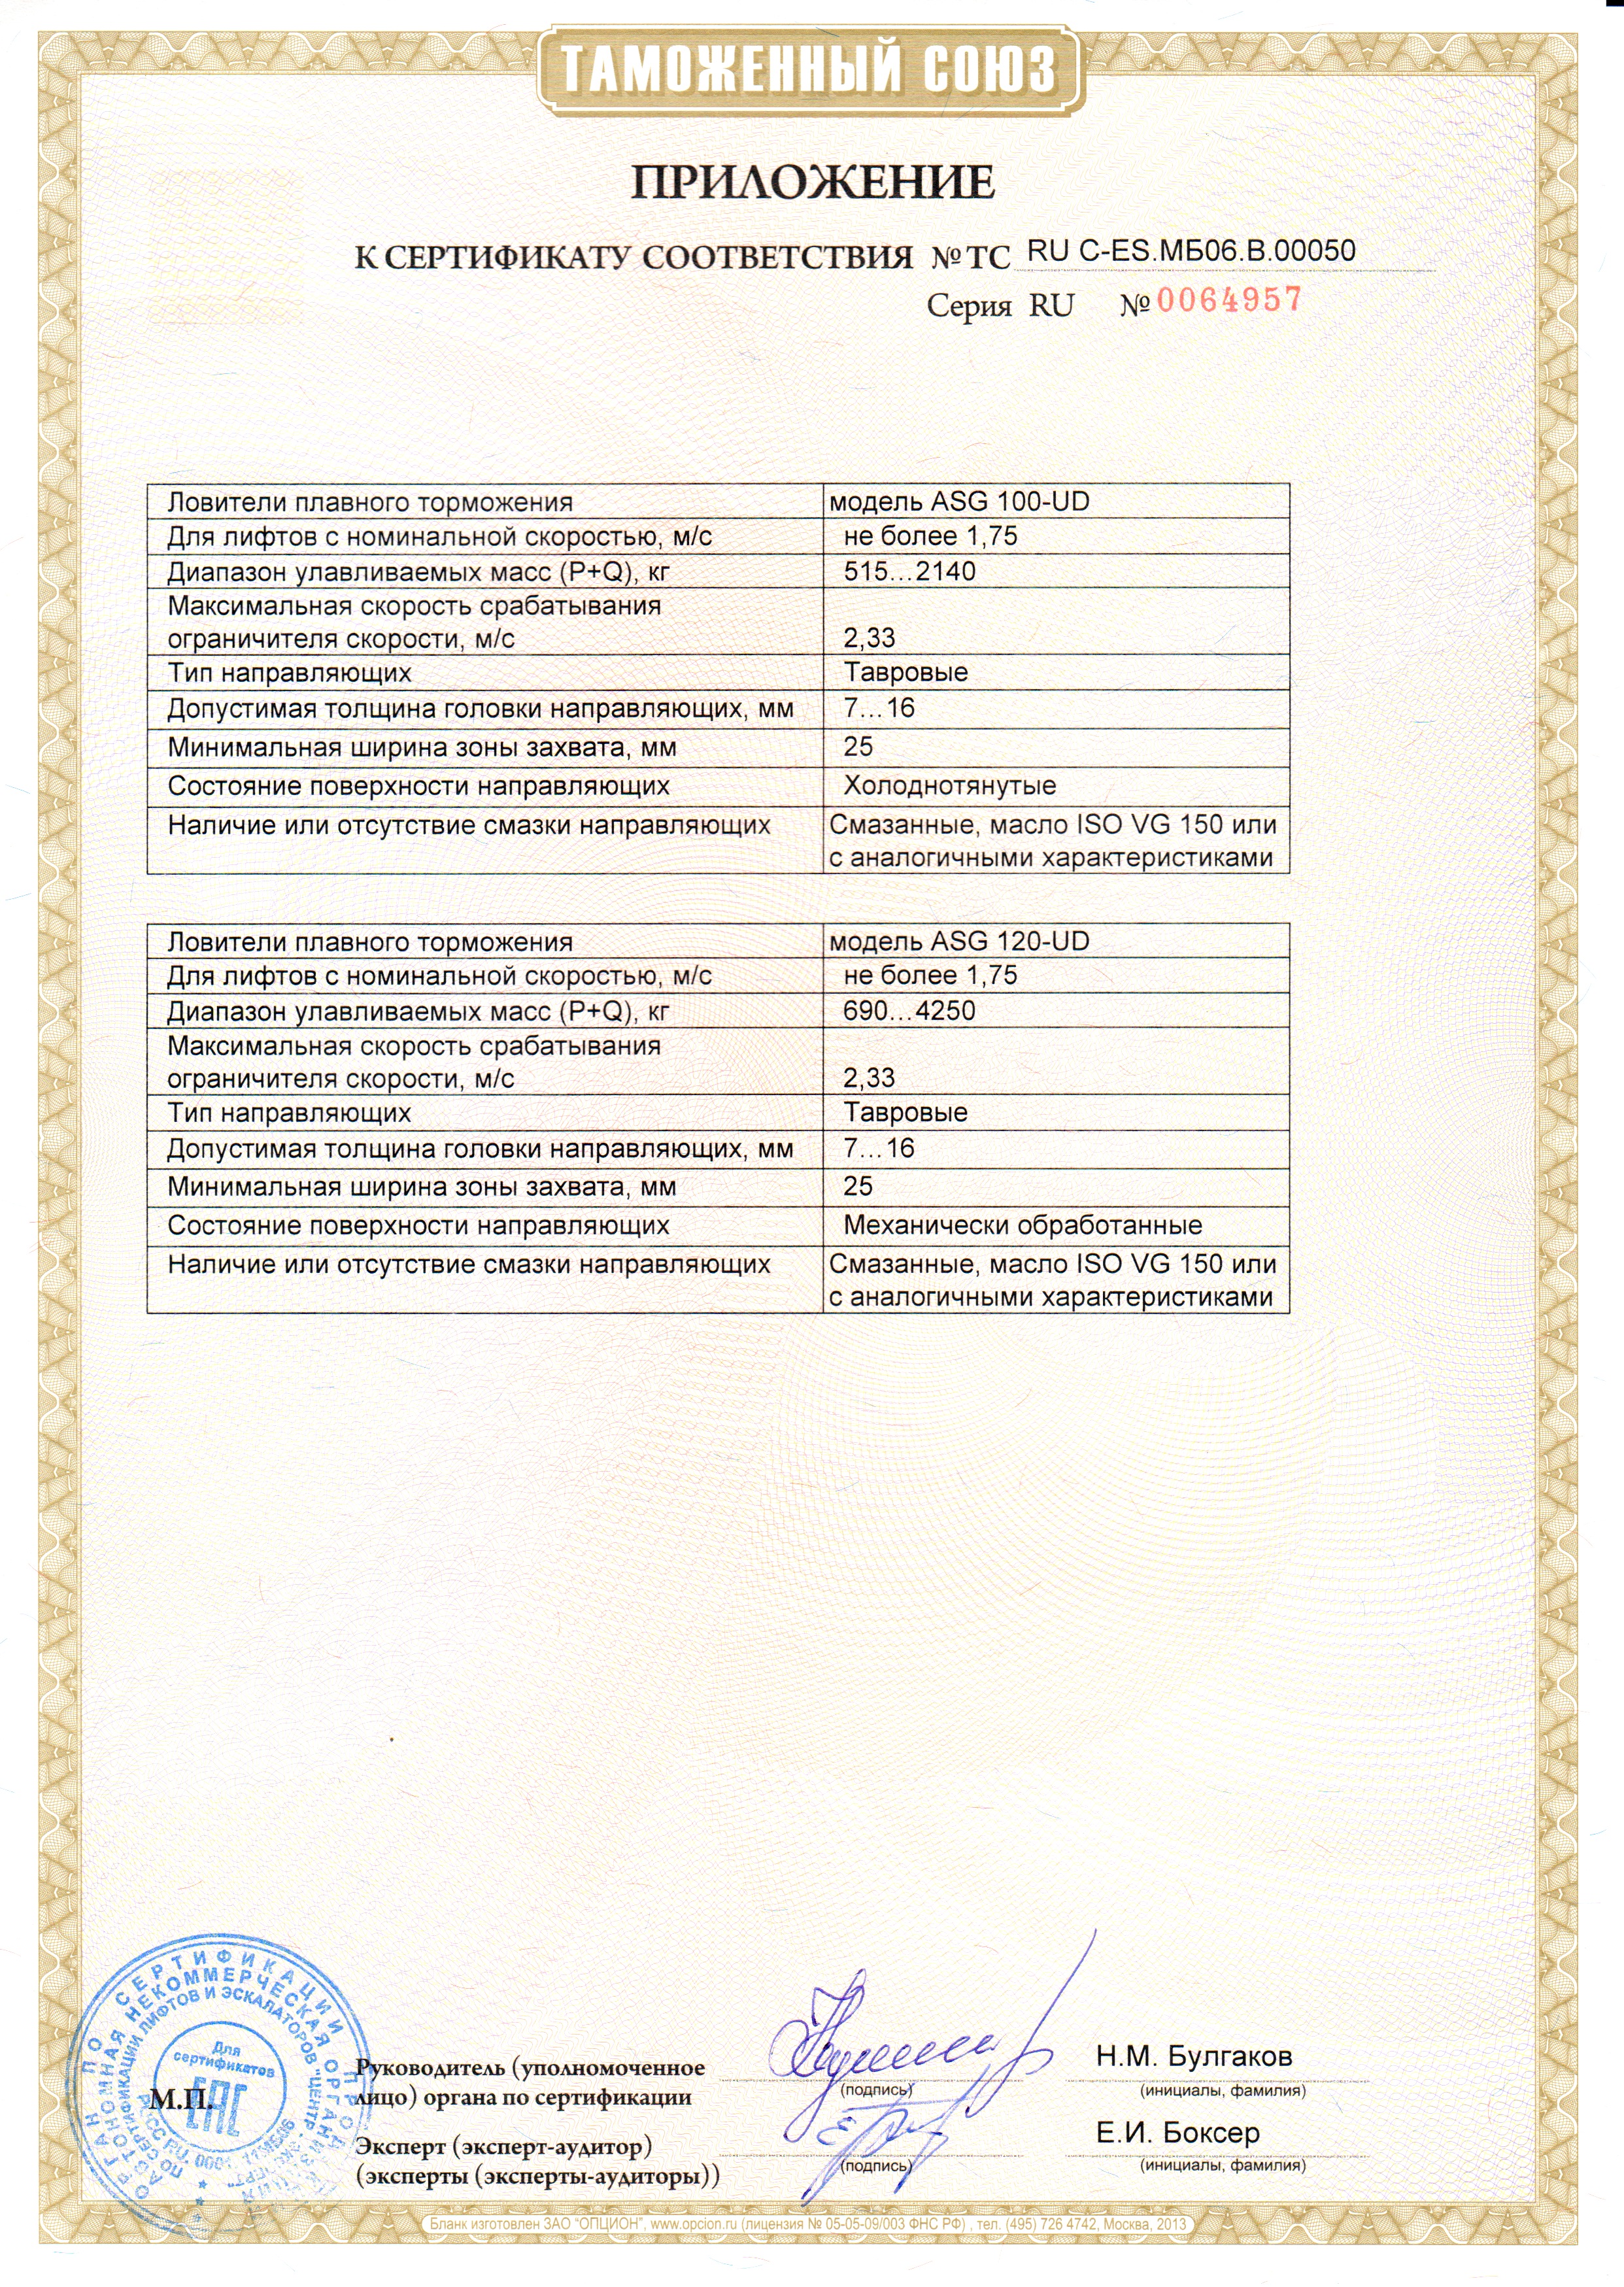 Приложение к сертификату № RU С-ES.МБ06.В00050